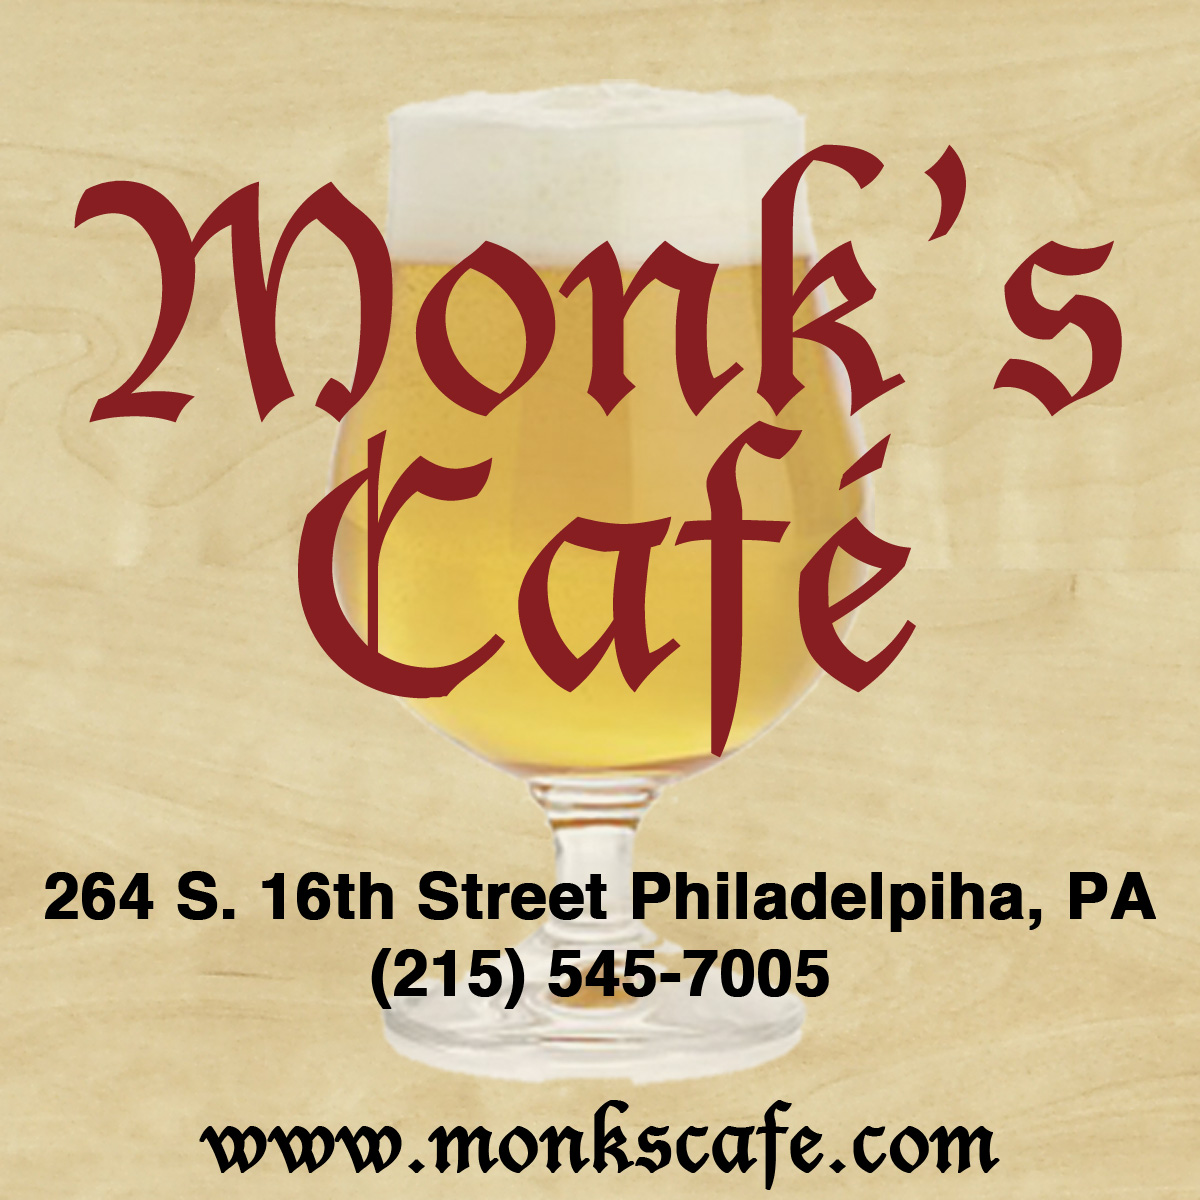 www.monkscafe.com